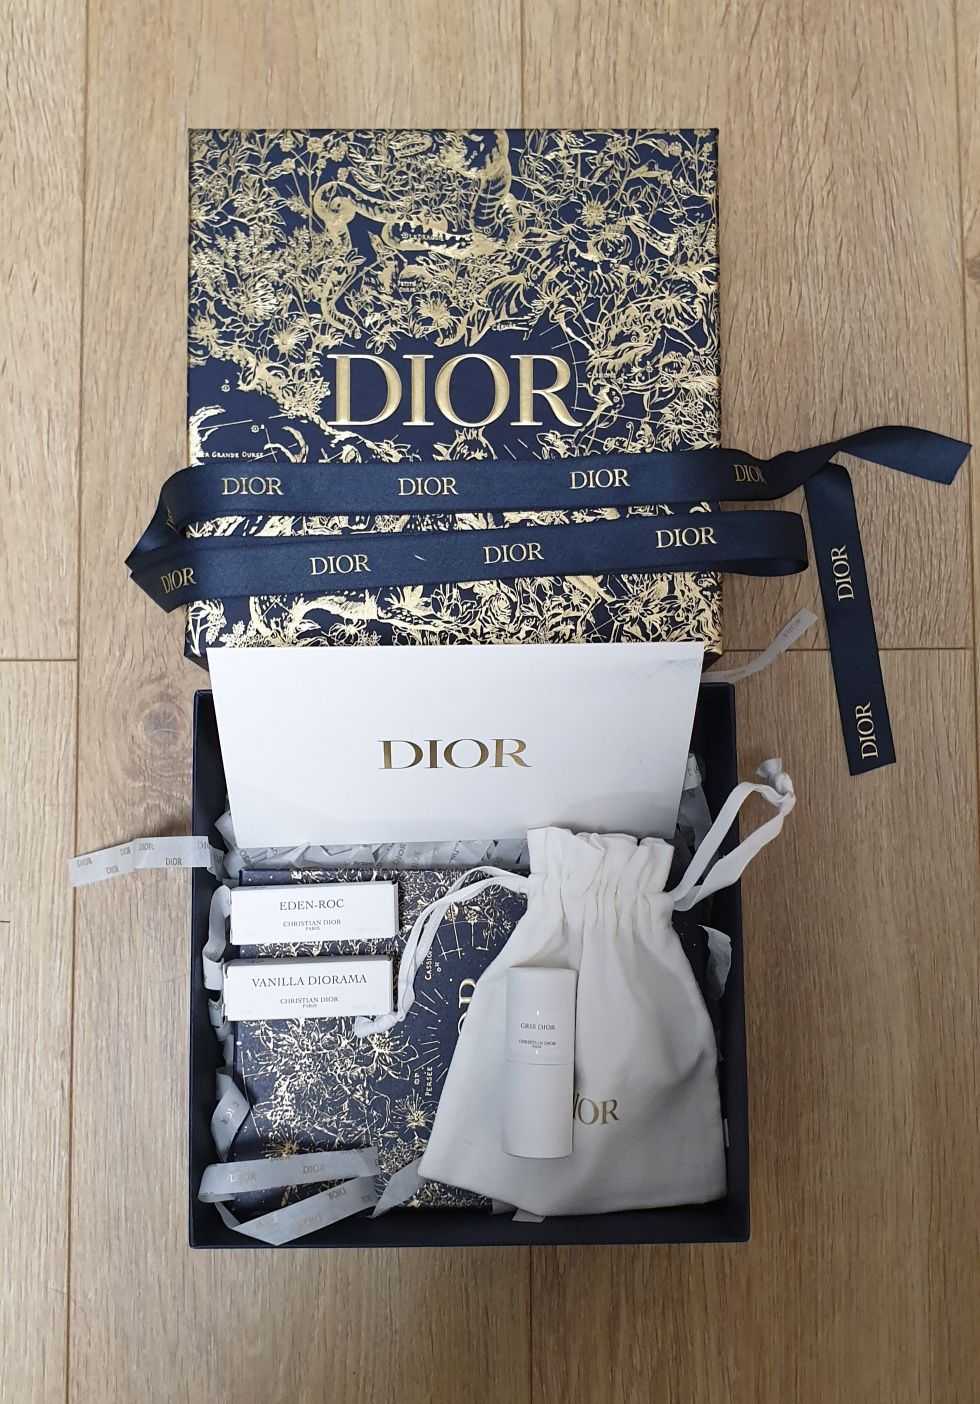 Dior Pudełko wersja kolekcjonerska, limitowana